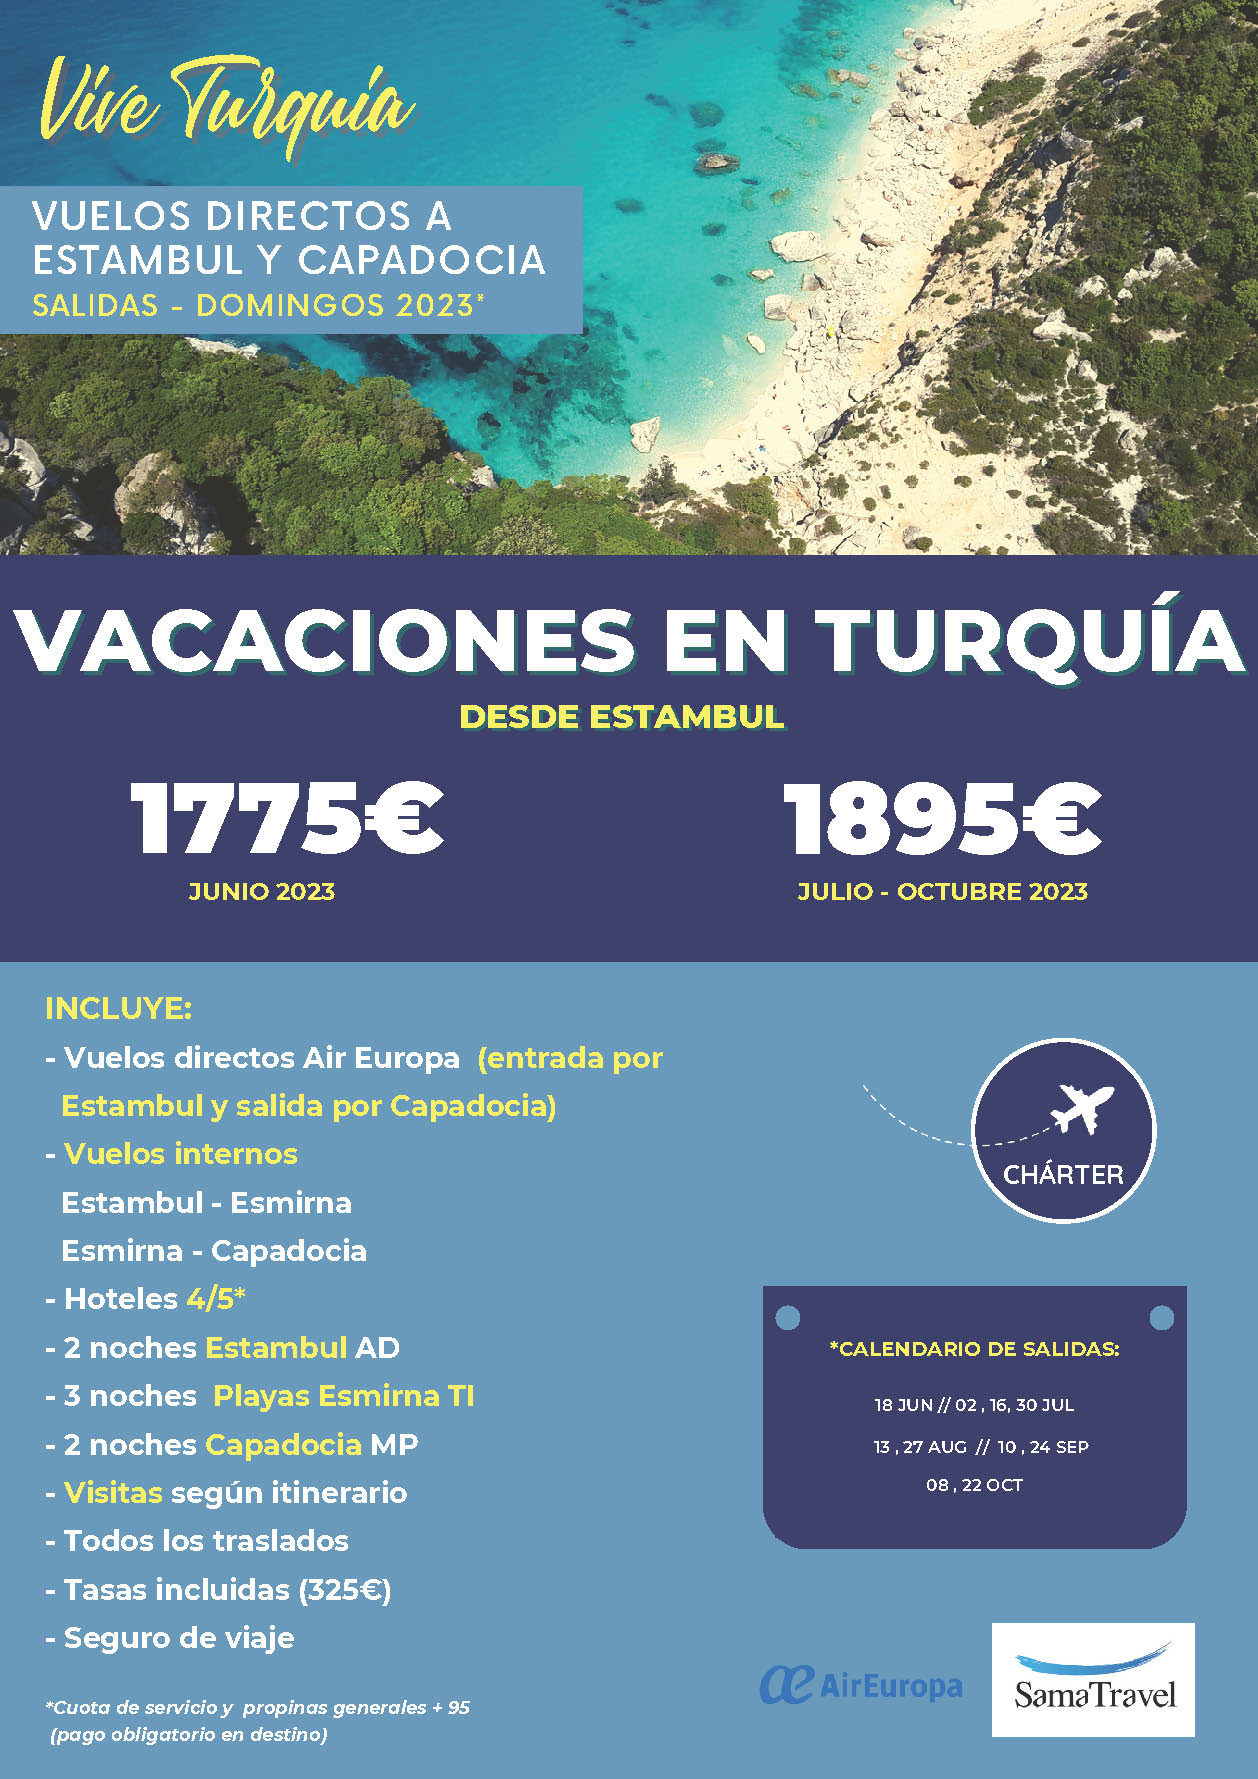 Oferta Sama Travel Verano 2023 Vacaciones en Turquia 8 dias MP salidas en vuelos especiales Air Europa directos desde Madrid